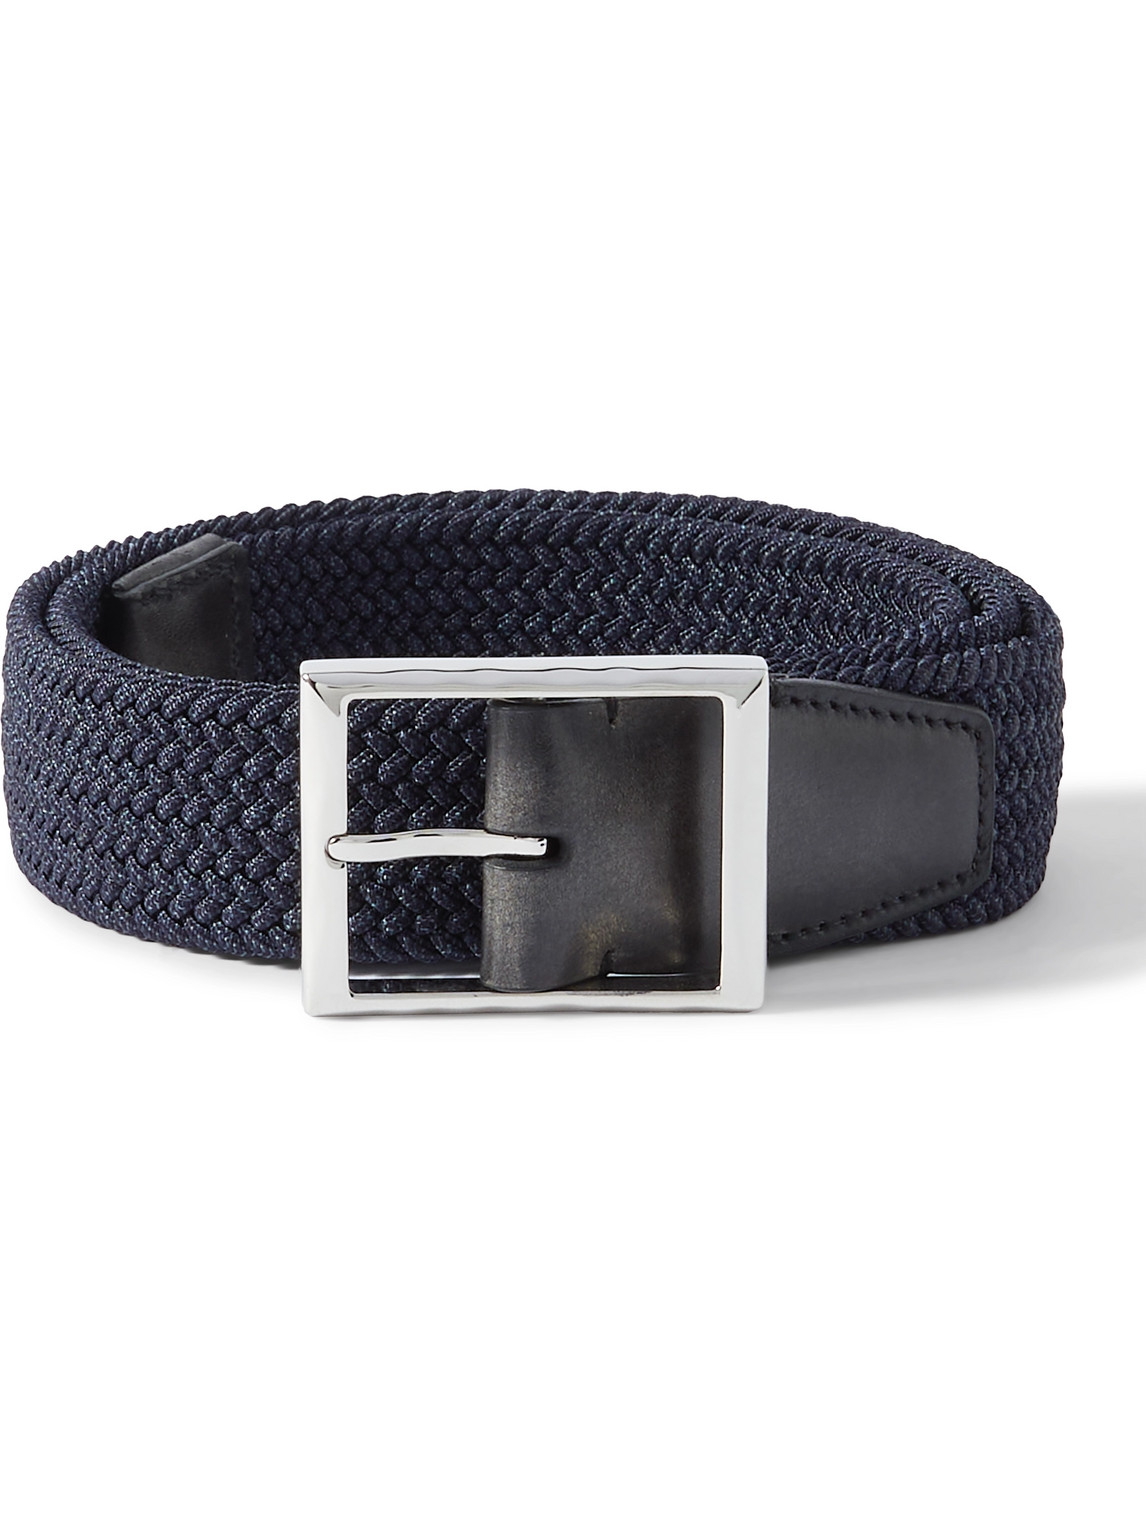 3.5cm Venezia Leather-Trimmed Woven Cord Belt